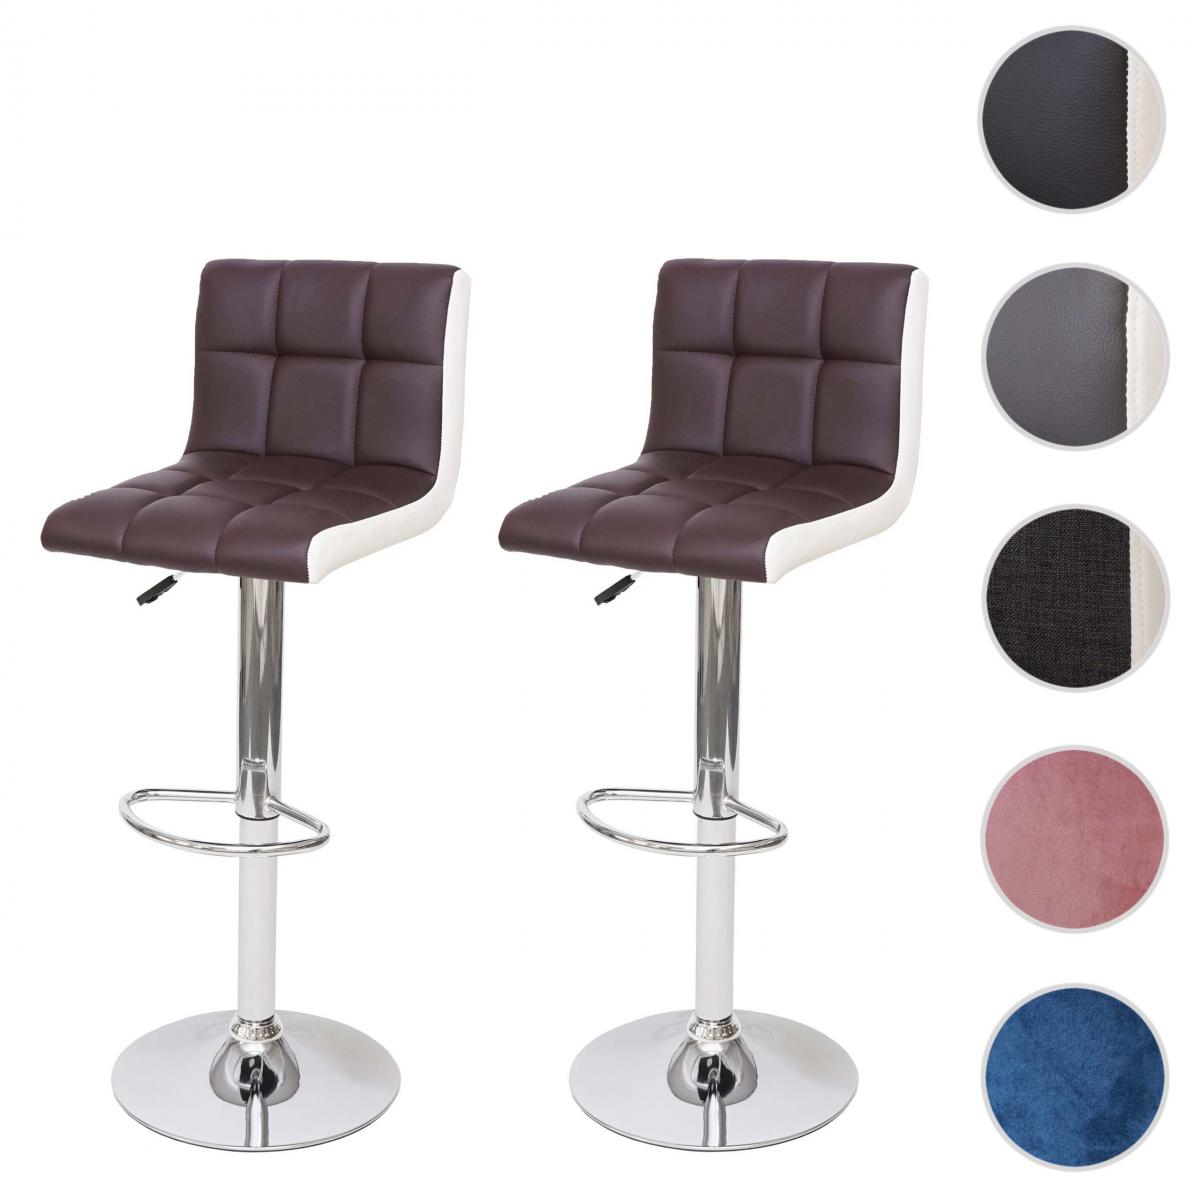 Mendler - 2x Tabouret de bar HWC-G87, chaise bar/comptoir, réglable en hauteur ~ similicuir marron-blanc, pied chromé - Tabourets